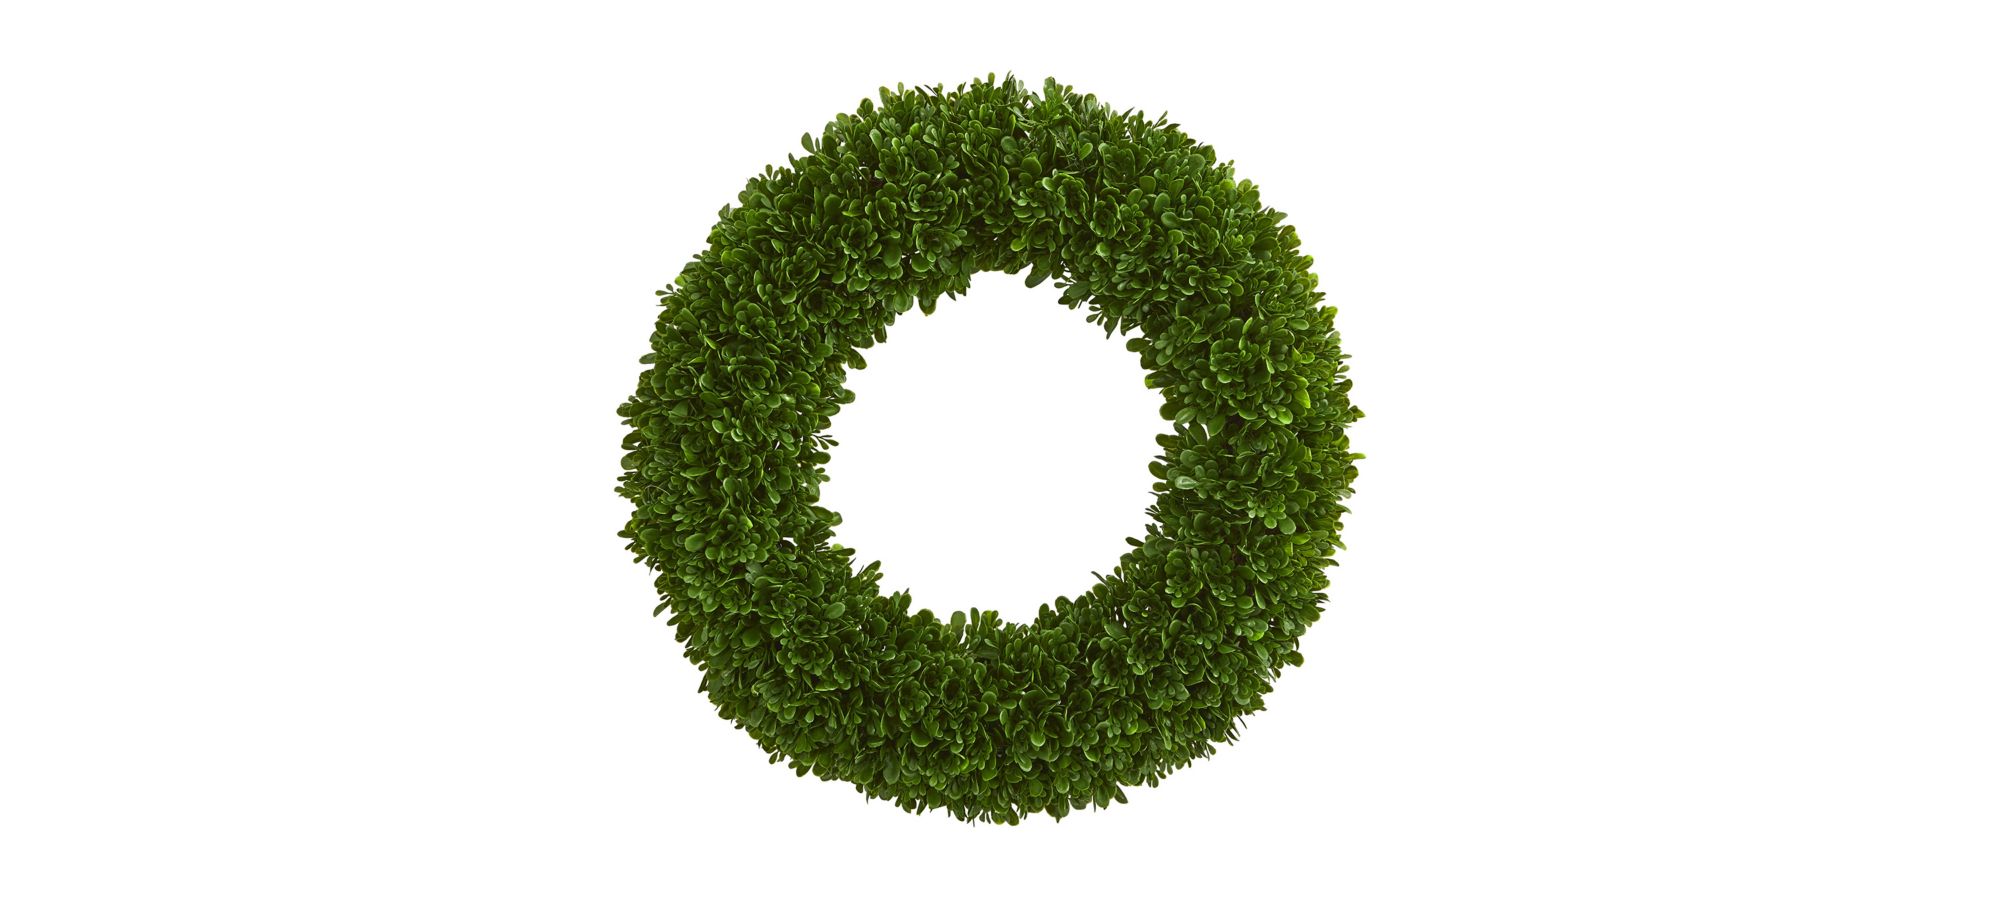 Tea Leaf Artificial Wreath UV Resistant (Indoor/Outdoor) in Green by Bellanest